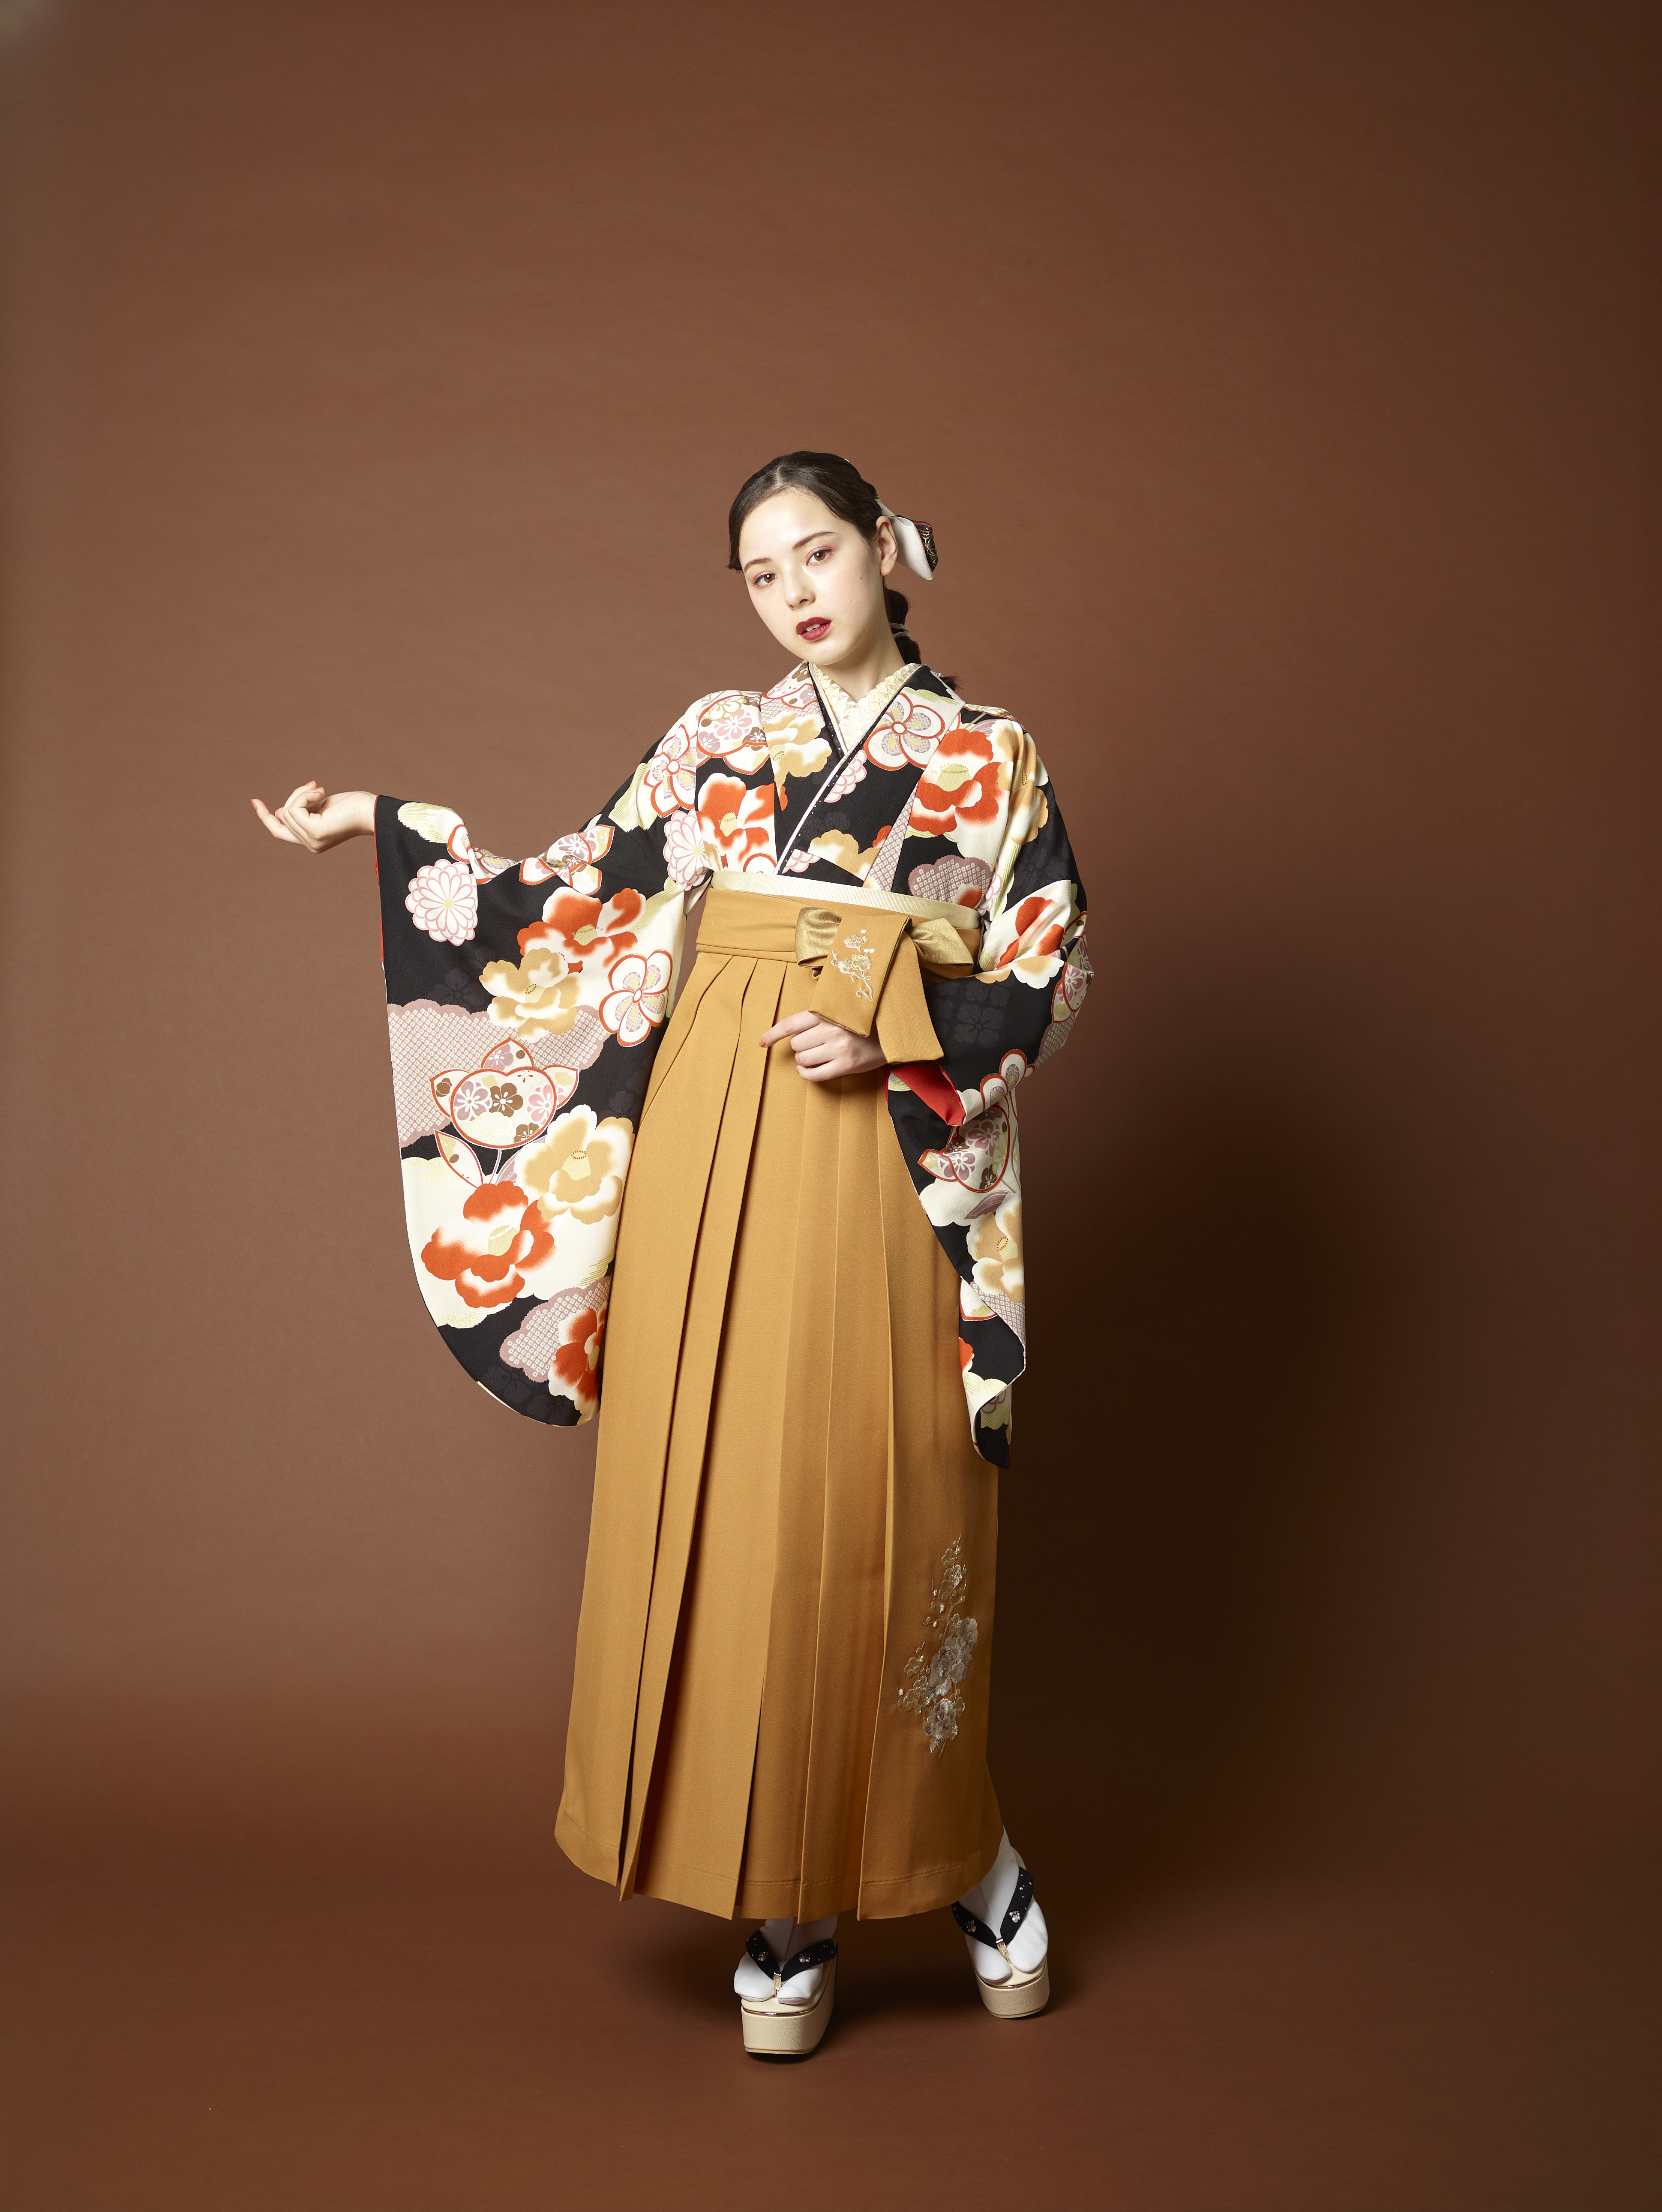 山本寛斎（ヤマモトカンサイ）ブランドの、黒地に白と赤の花柄の二尺袖と、からし色の袴の女性用卒業式袴を着用した全身写真